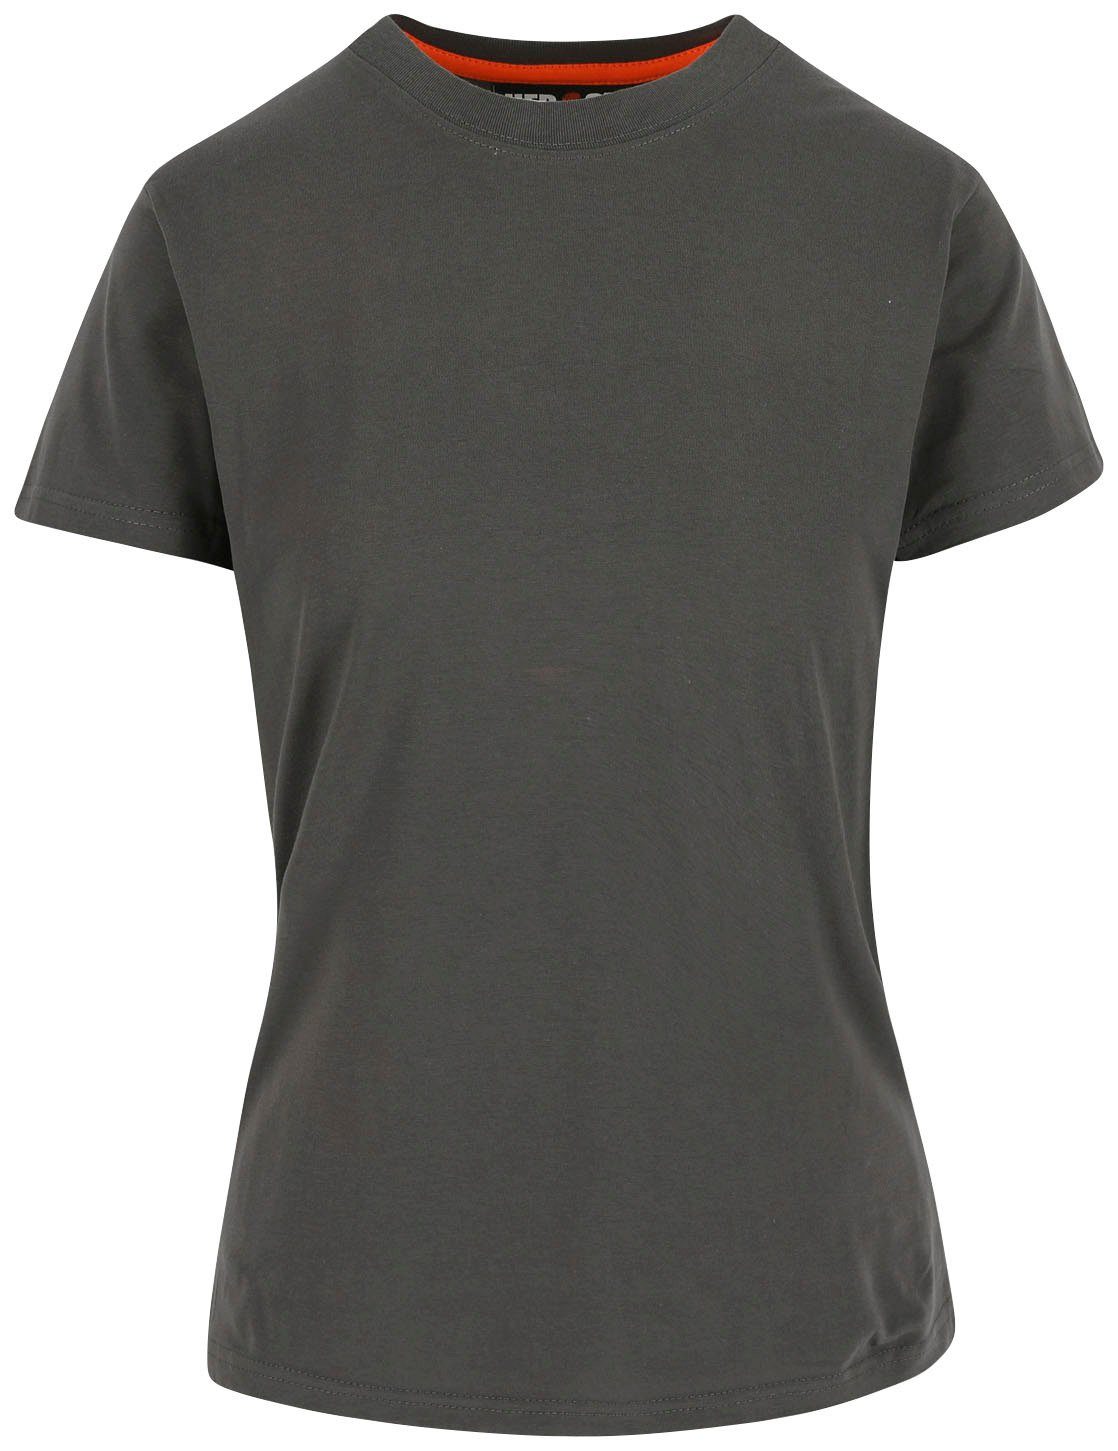 majestätisch Damen Schlaufe, Tragegefühl Herock hintere 1 T-Shirt Epona angenehmes grau Kurzärmlig Figurbetont, T-Shirt